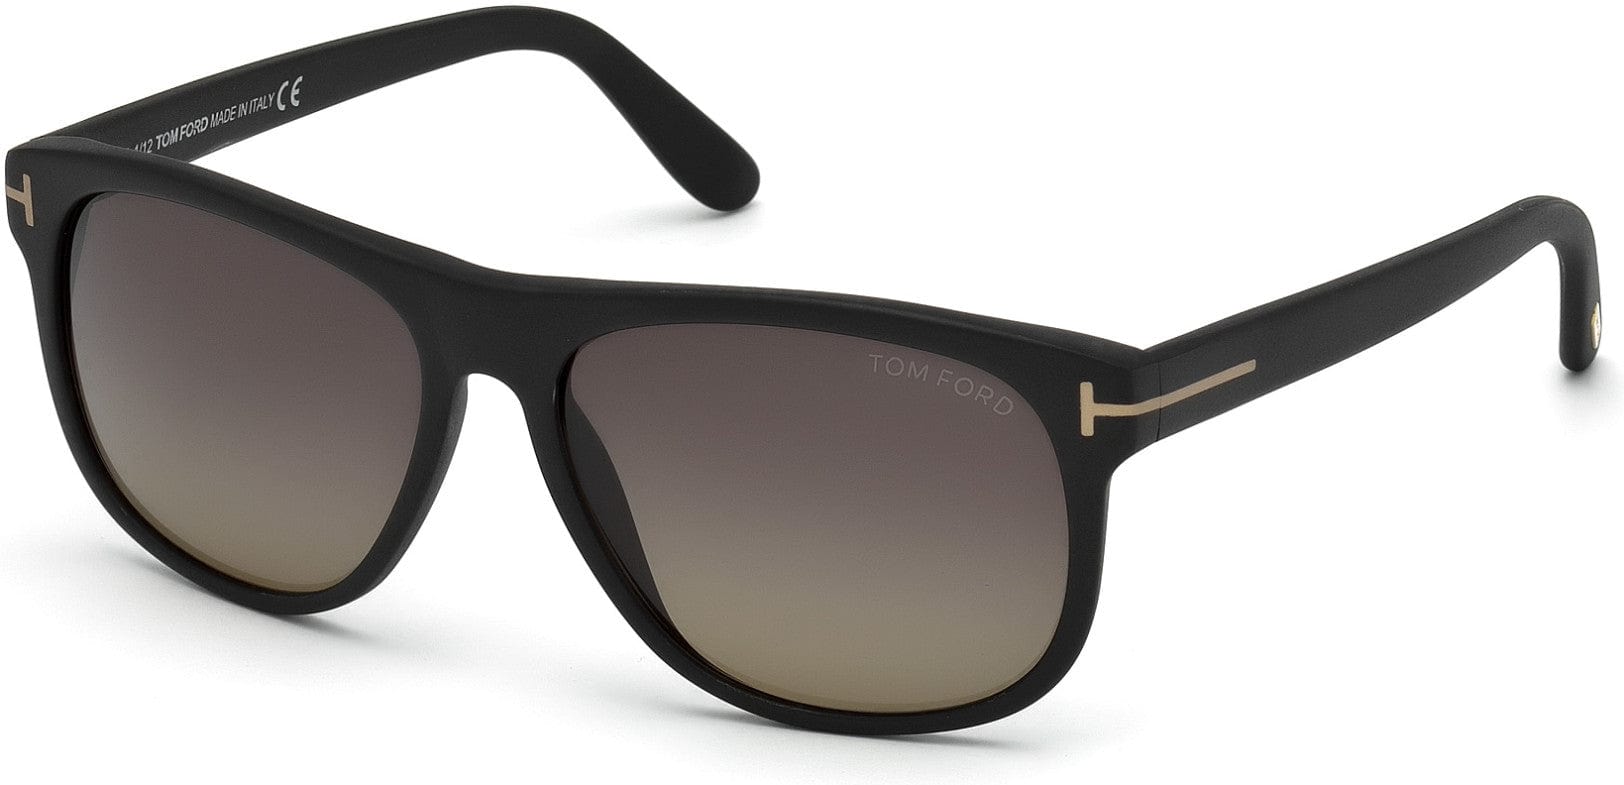 Tom Ford FT0236 Olivier Geometric Sunglasses 02D-02D - Matte Black/ Polarized Grey Gradient Lenses